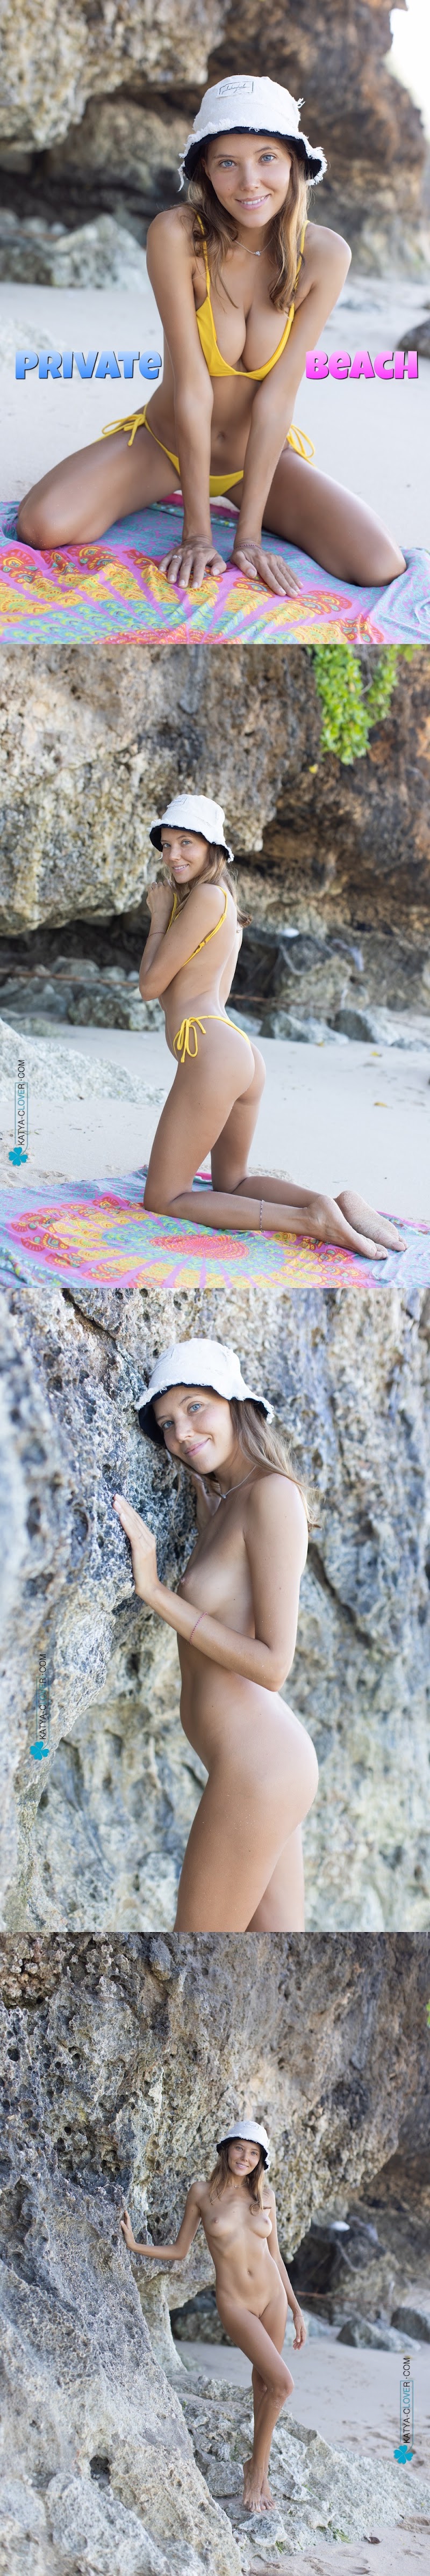 [KatyaClover.Com] Katya Clover - Private Beach katyaclover-com 12300 